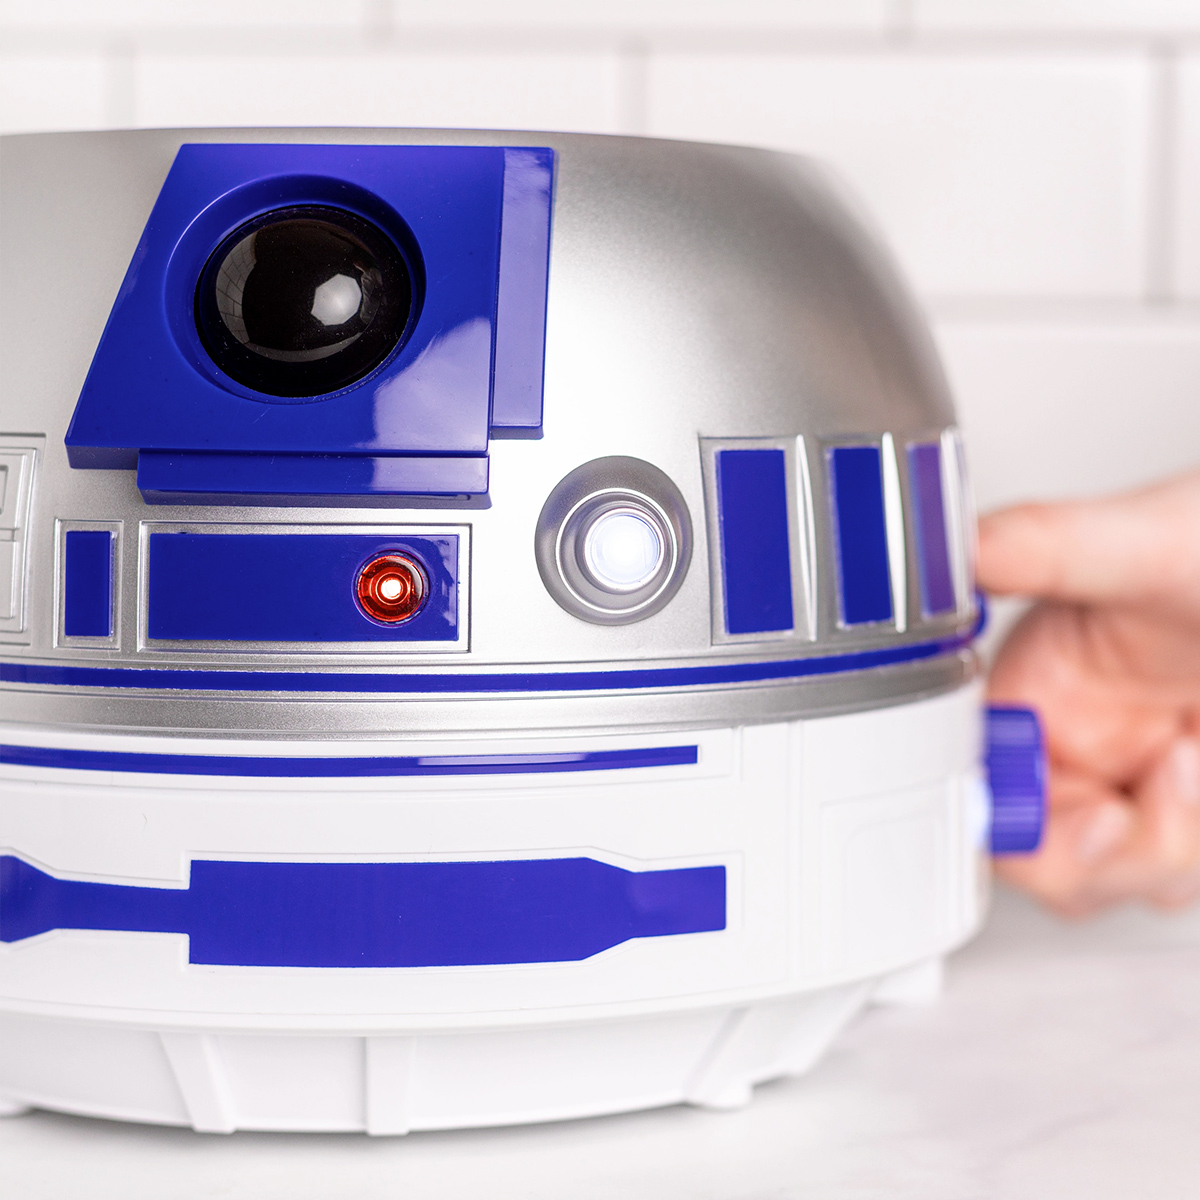 Torradeira R2-D2 com Luzes e Sons (Star Wars)